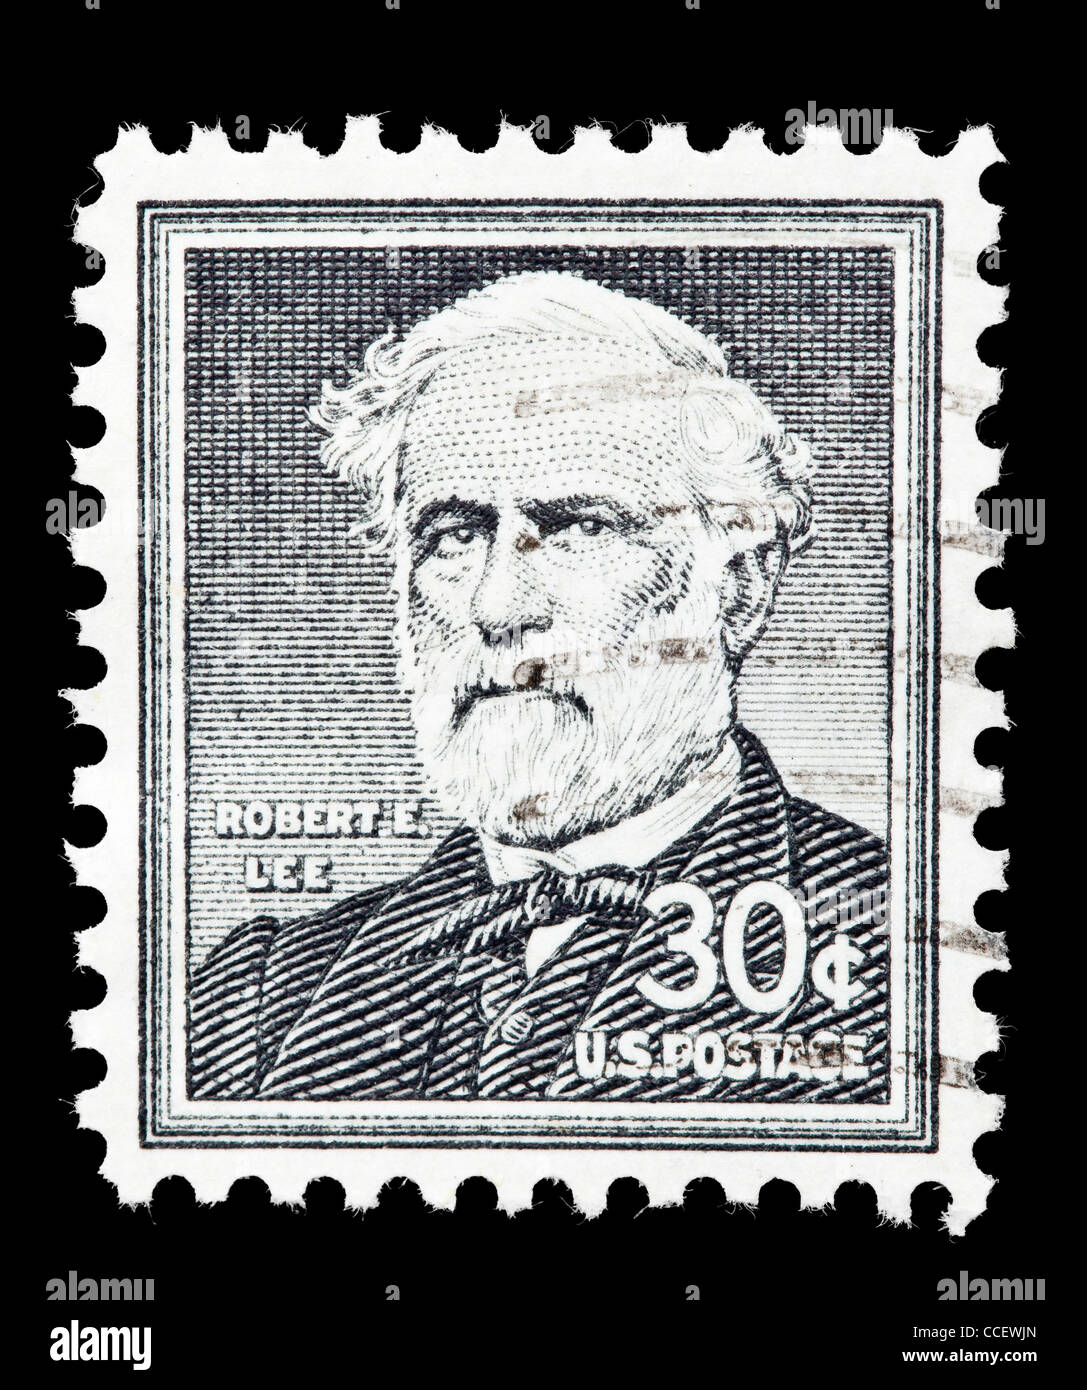 Sello: Estados Unidos franqueo, Robert E. Lee, el 30% de 1957, estampado Foto de stock